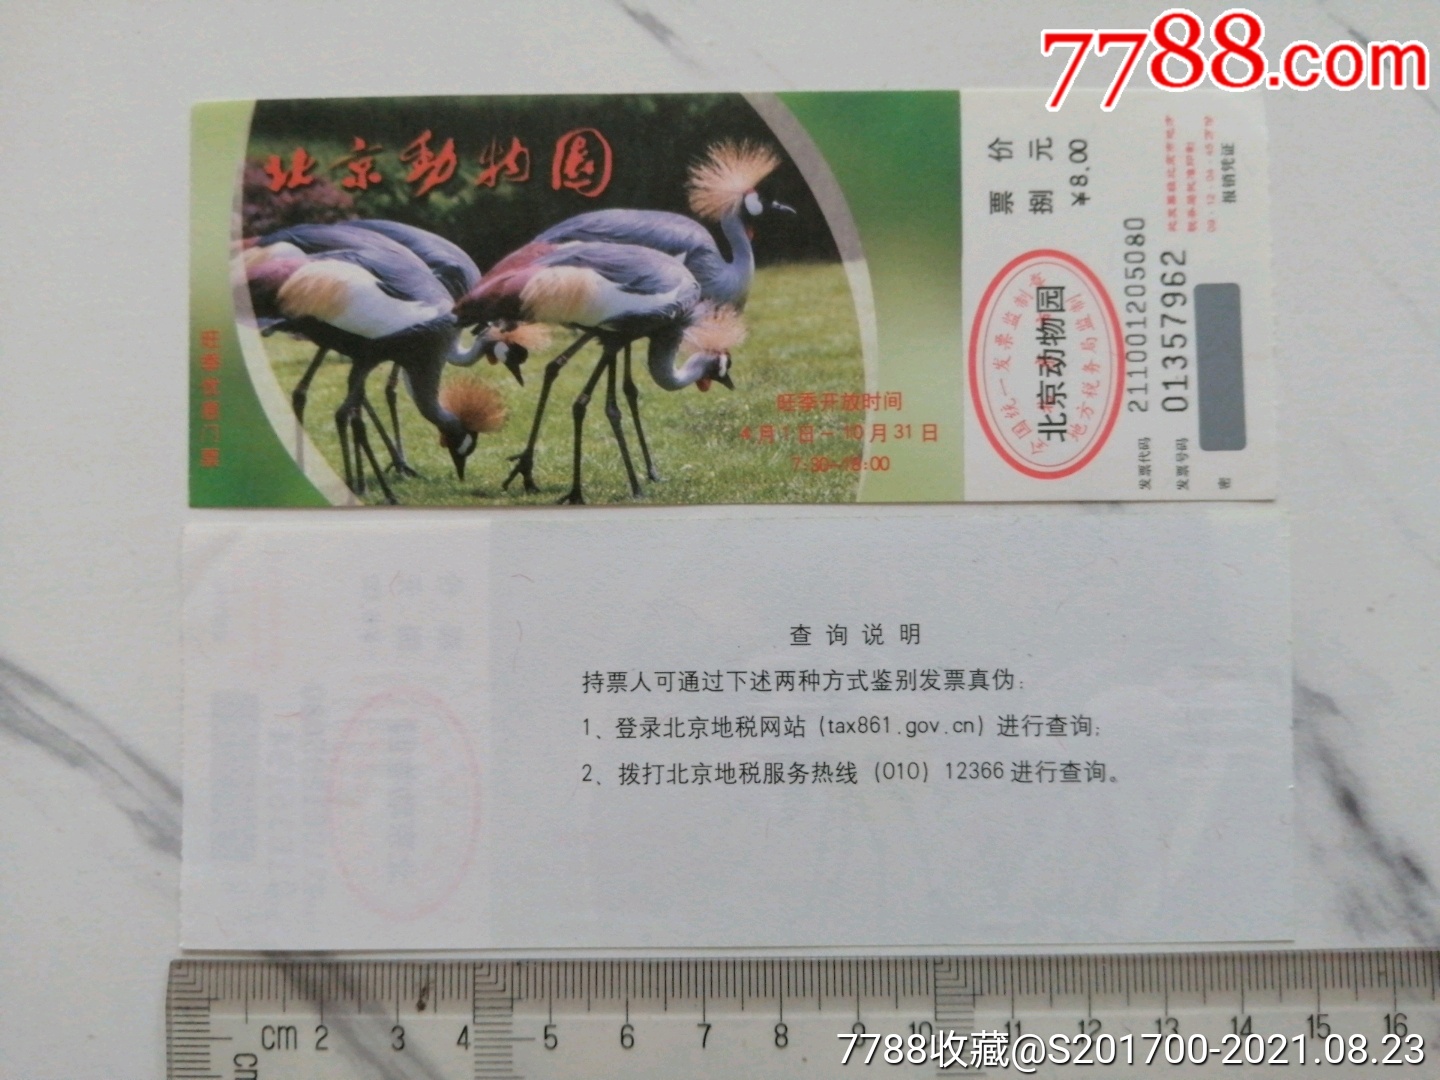 2012版北京动物园旺季优惠门票(8元版)